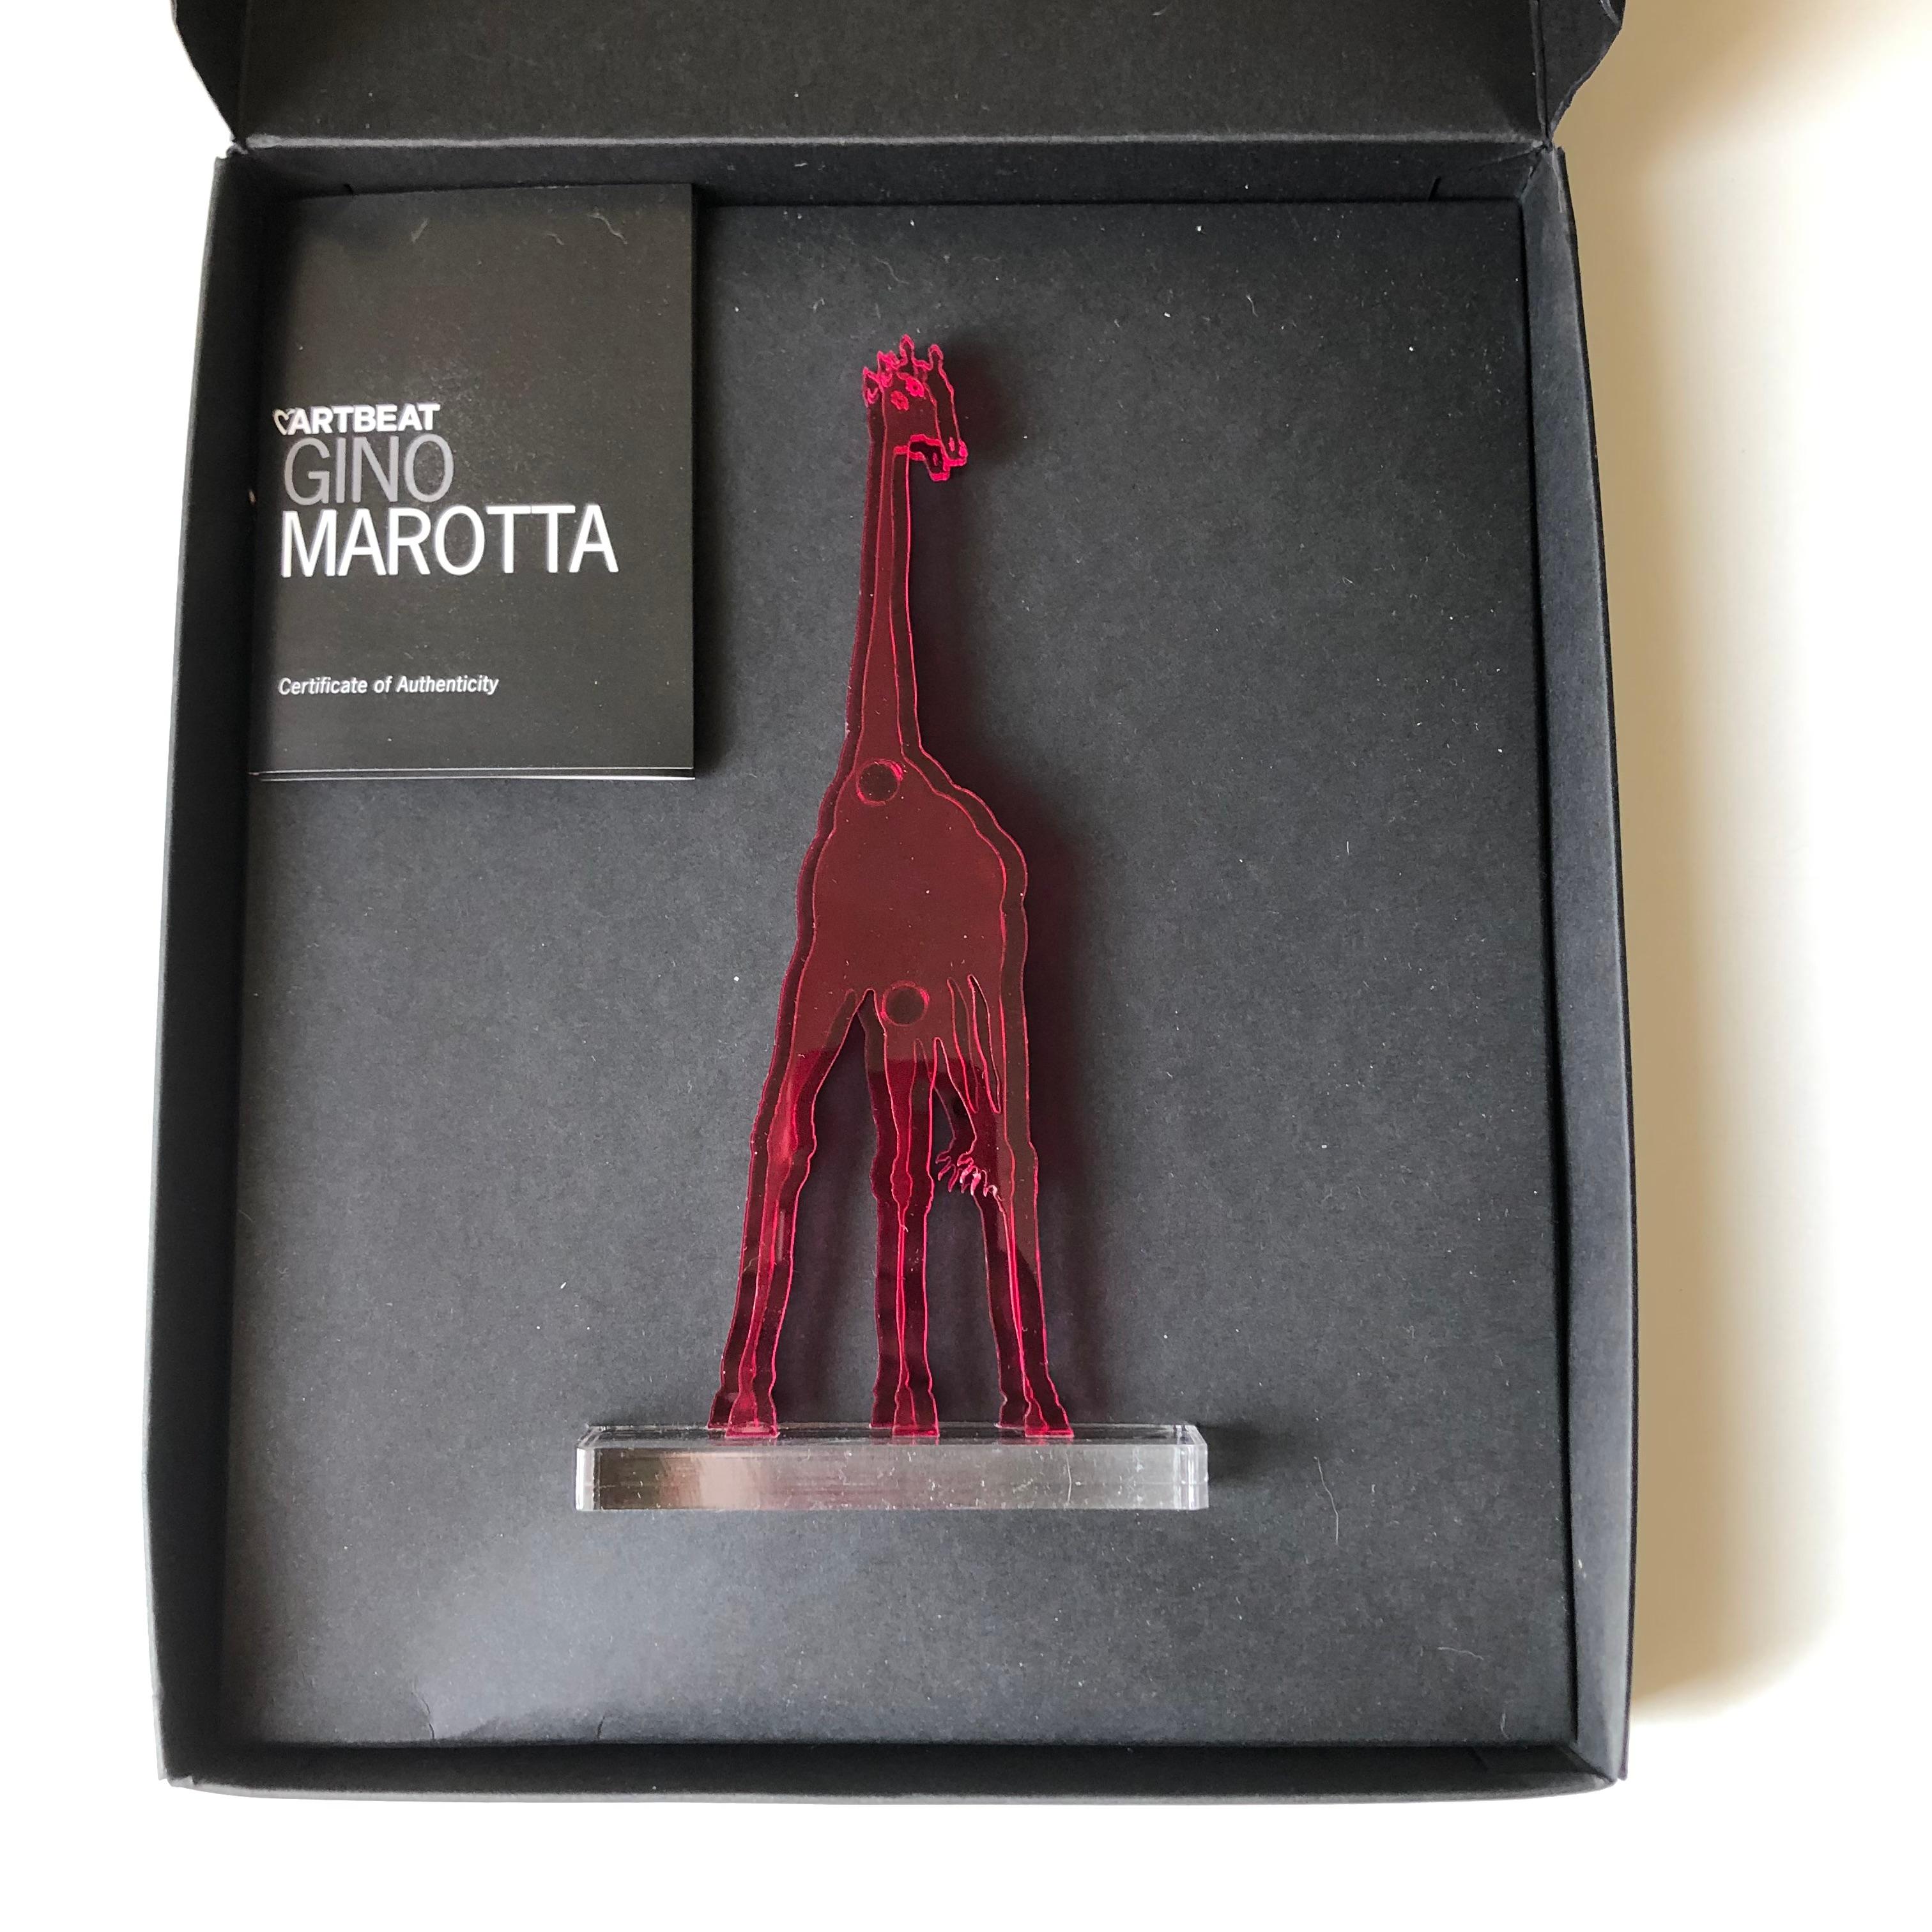 Gino MAROTTA (1935-2012)
Girafe artificielle, 2010
Edition Artbeat arrêtée
Sculpture, multiple en méthacrylate coloré fuschia et découpé. Signé sur la base. Dans sa boite d'origine. 
Haut. 19 cm Longueur : 10 cm

Gino MAROTTA (1935-2012)
Girafe